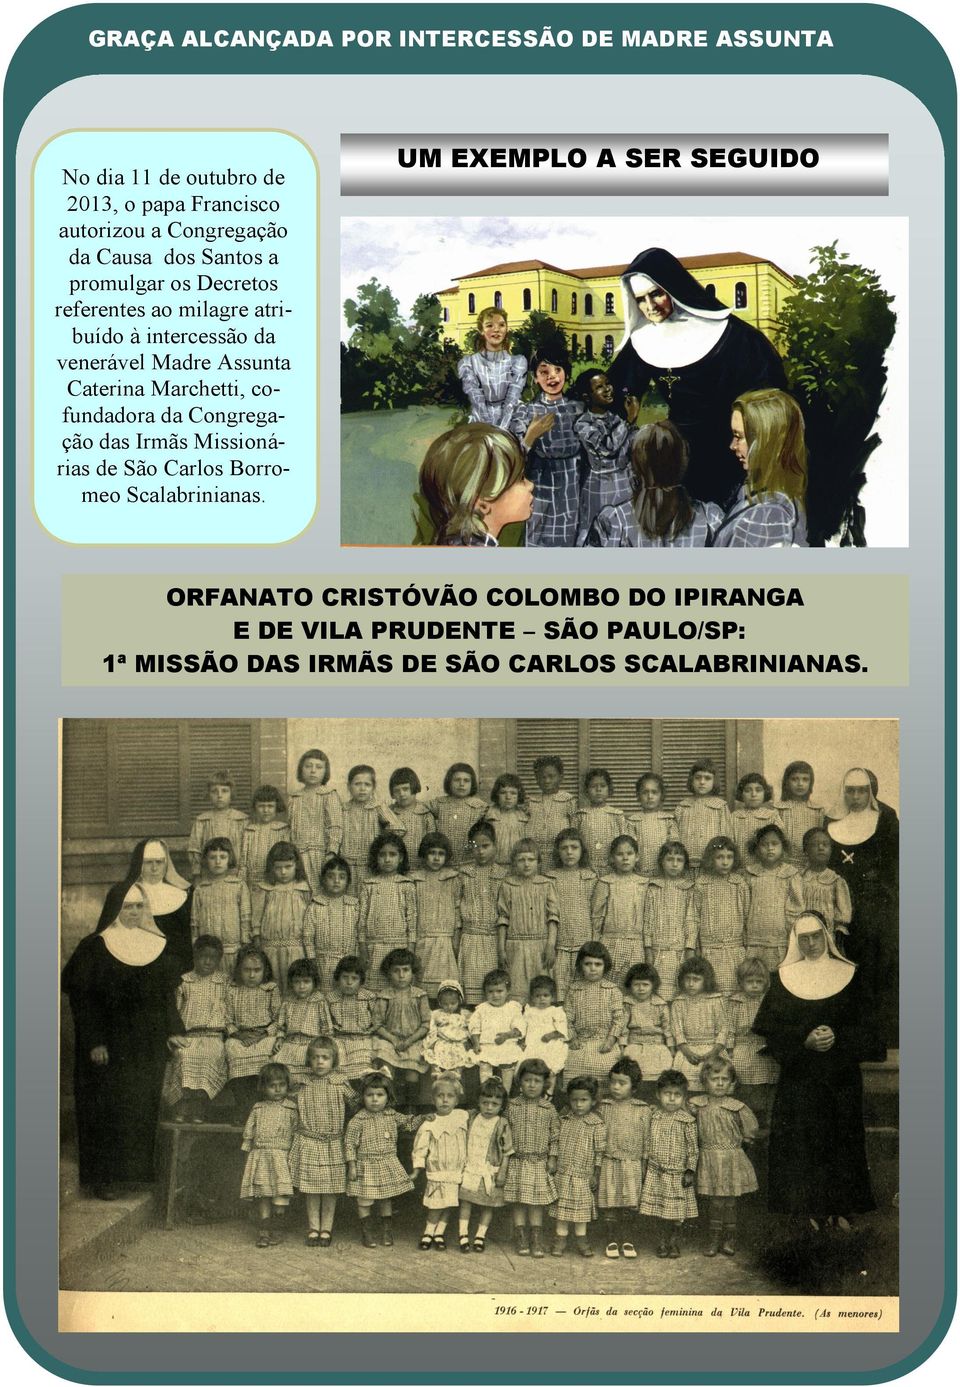 Marchetti, cofundadora da Congregação das Irmãs Missionárias de São Carlos Borromeo Scalabrinianas.